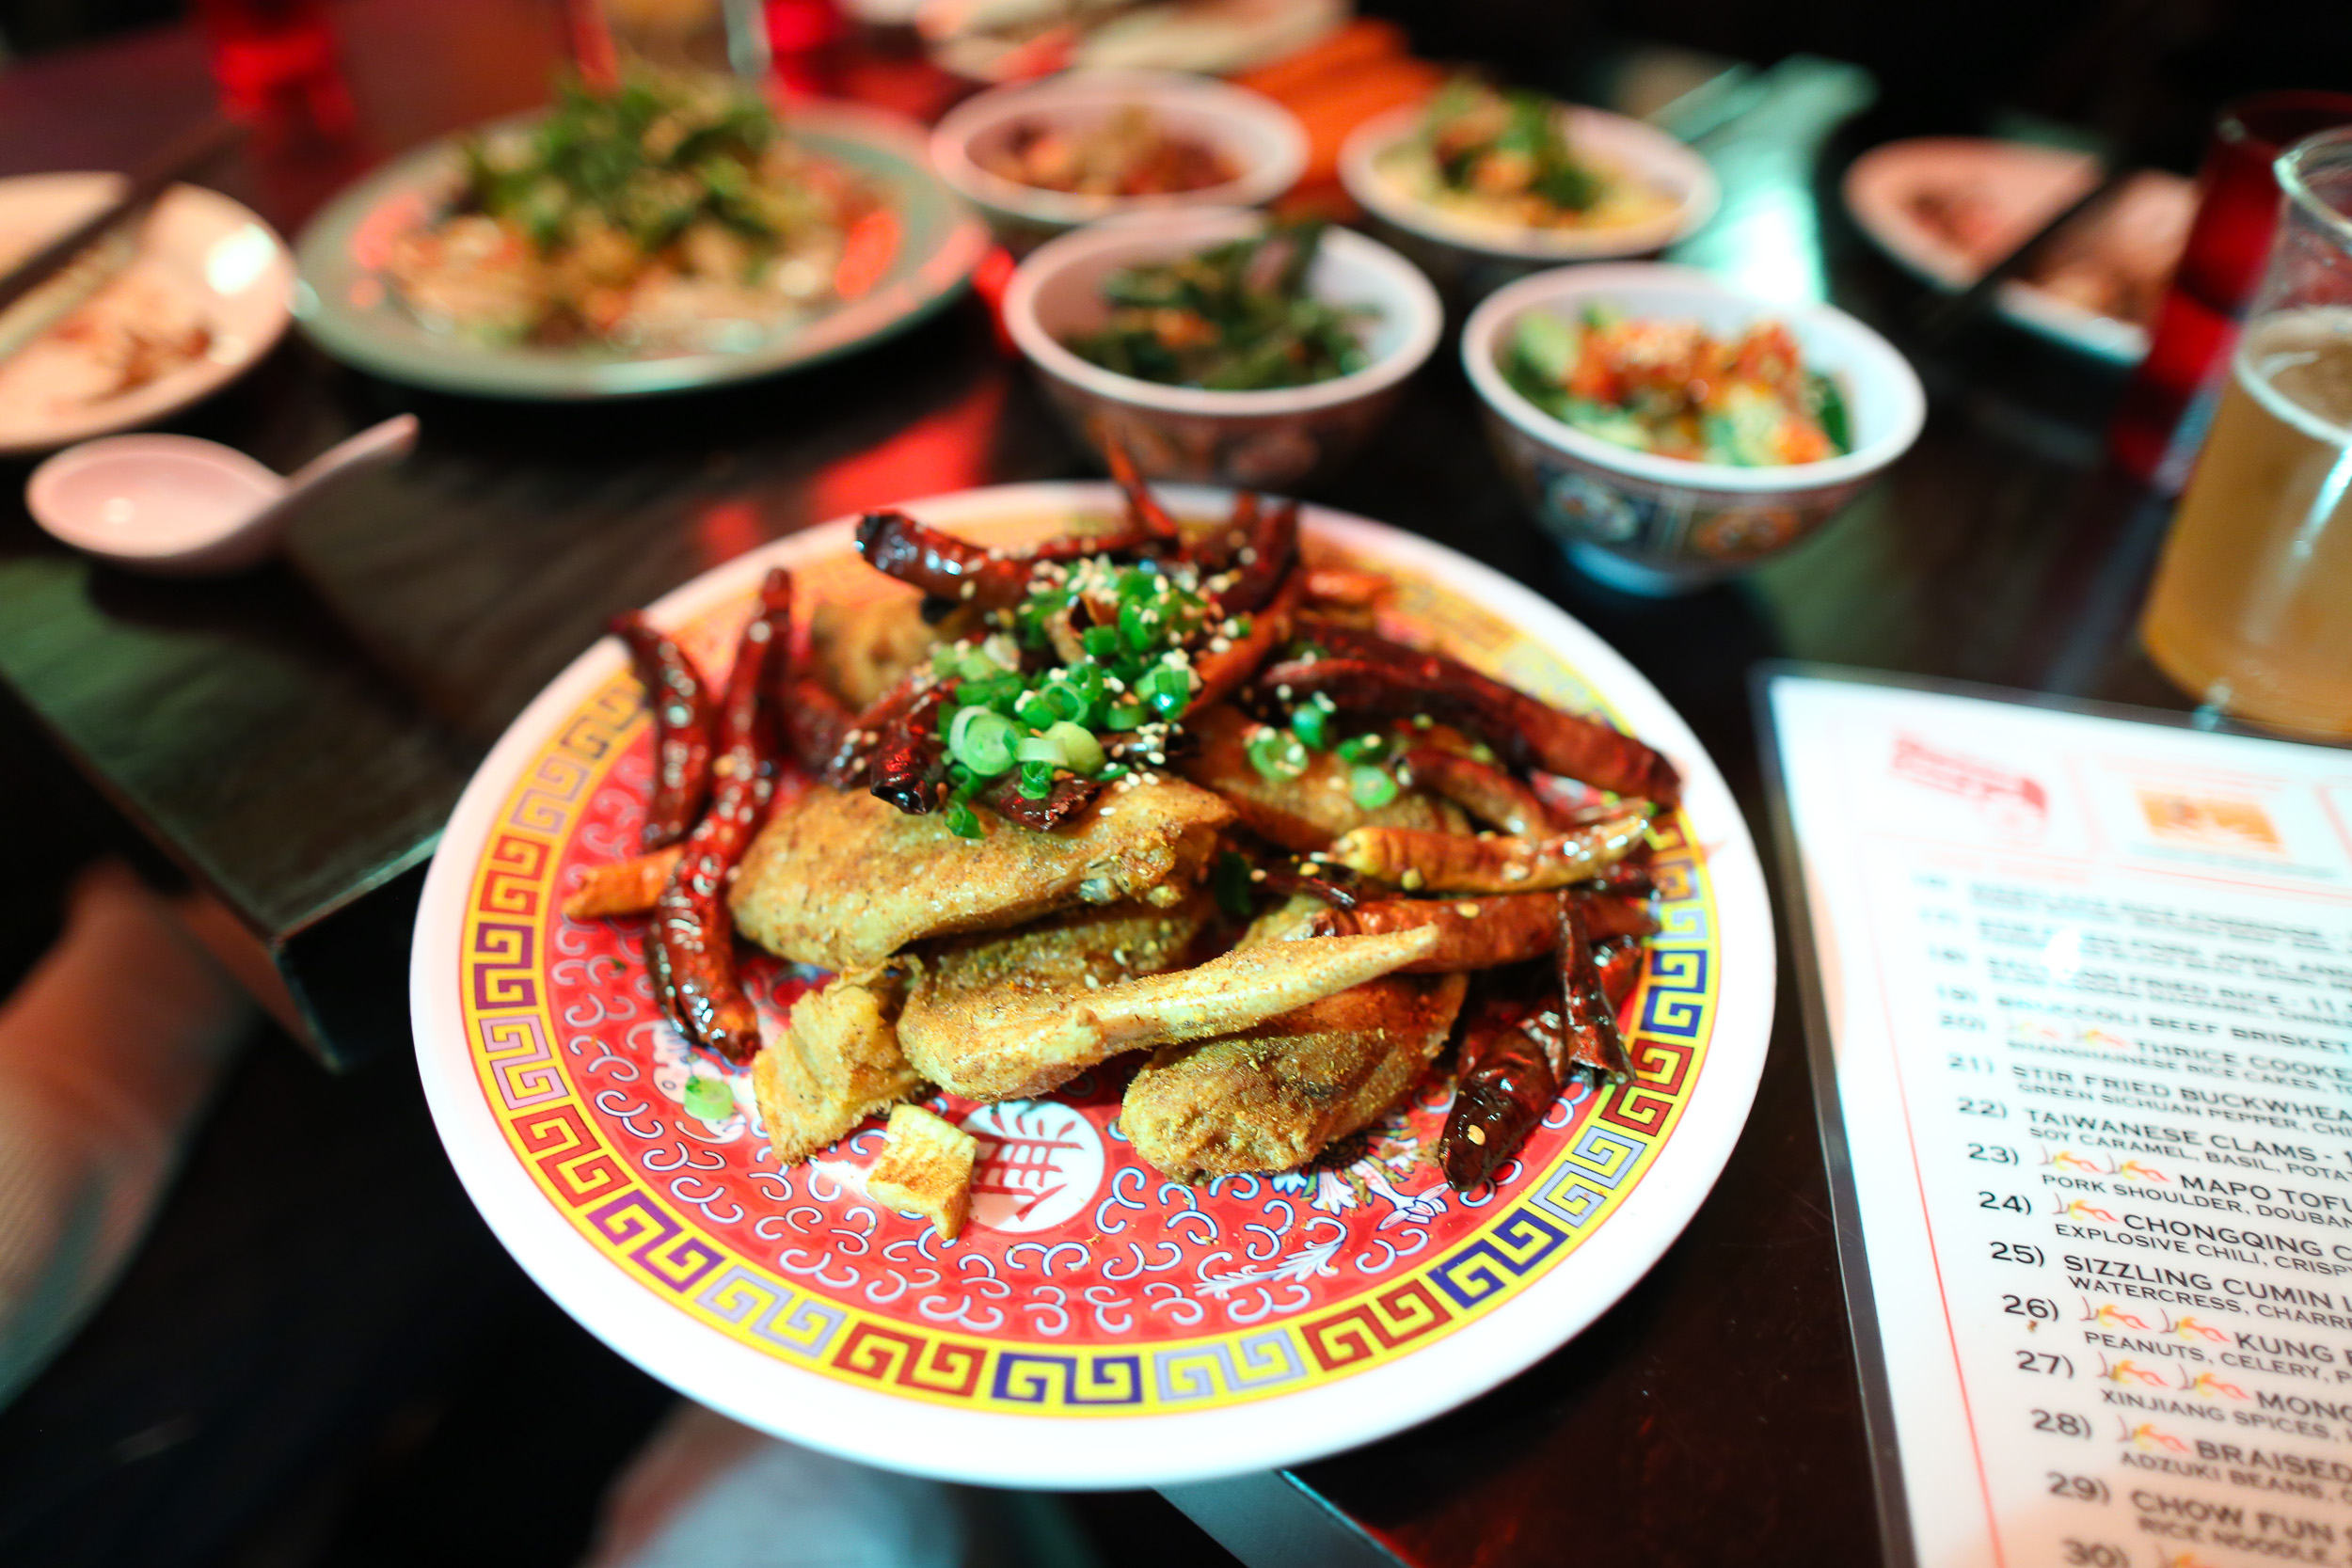 Chongqing Chicken Wings